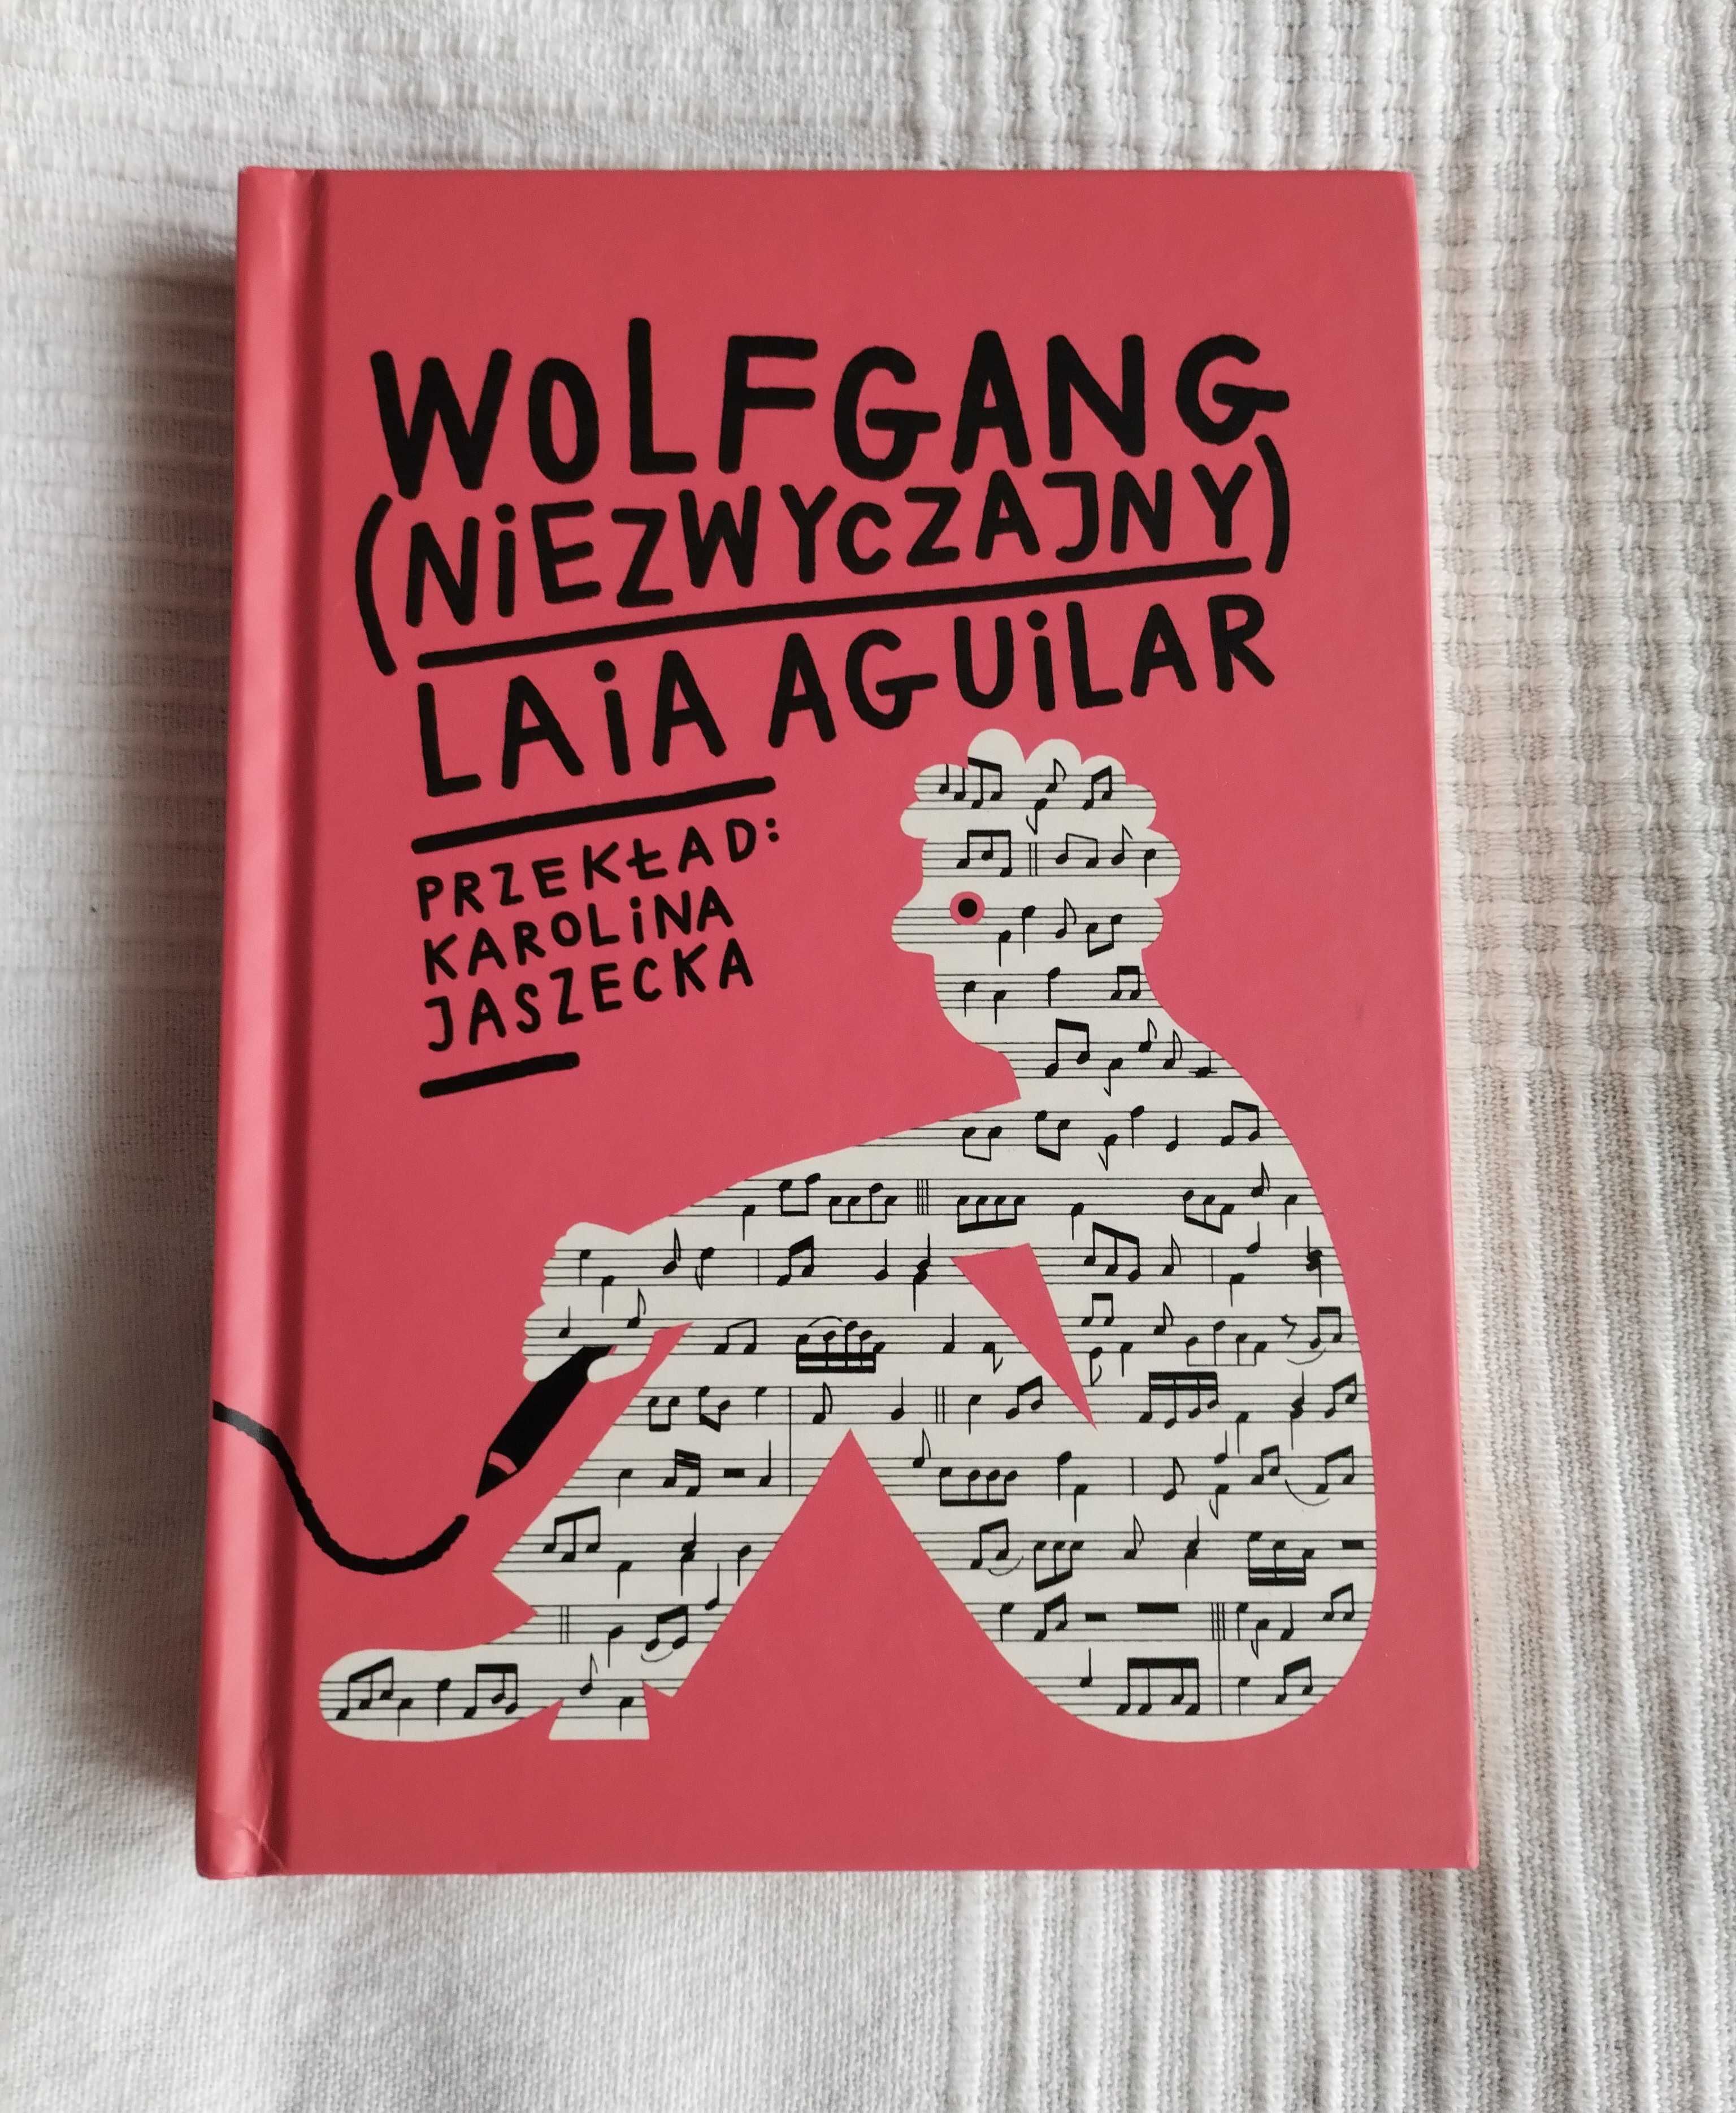 Książka "Wolfgang (niezwyczajny)" L. Aguilar